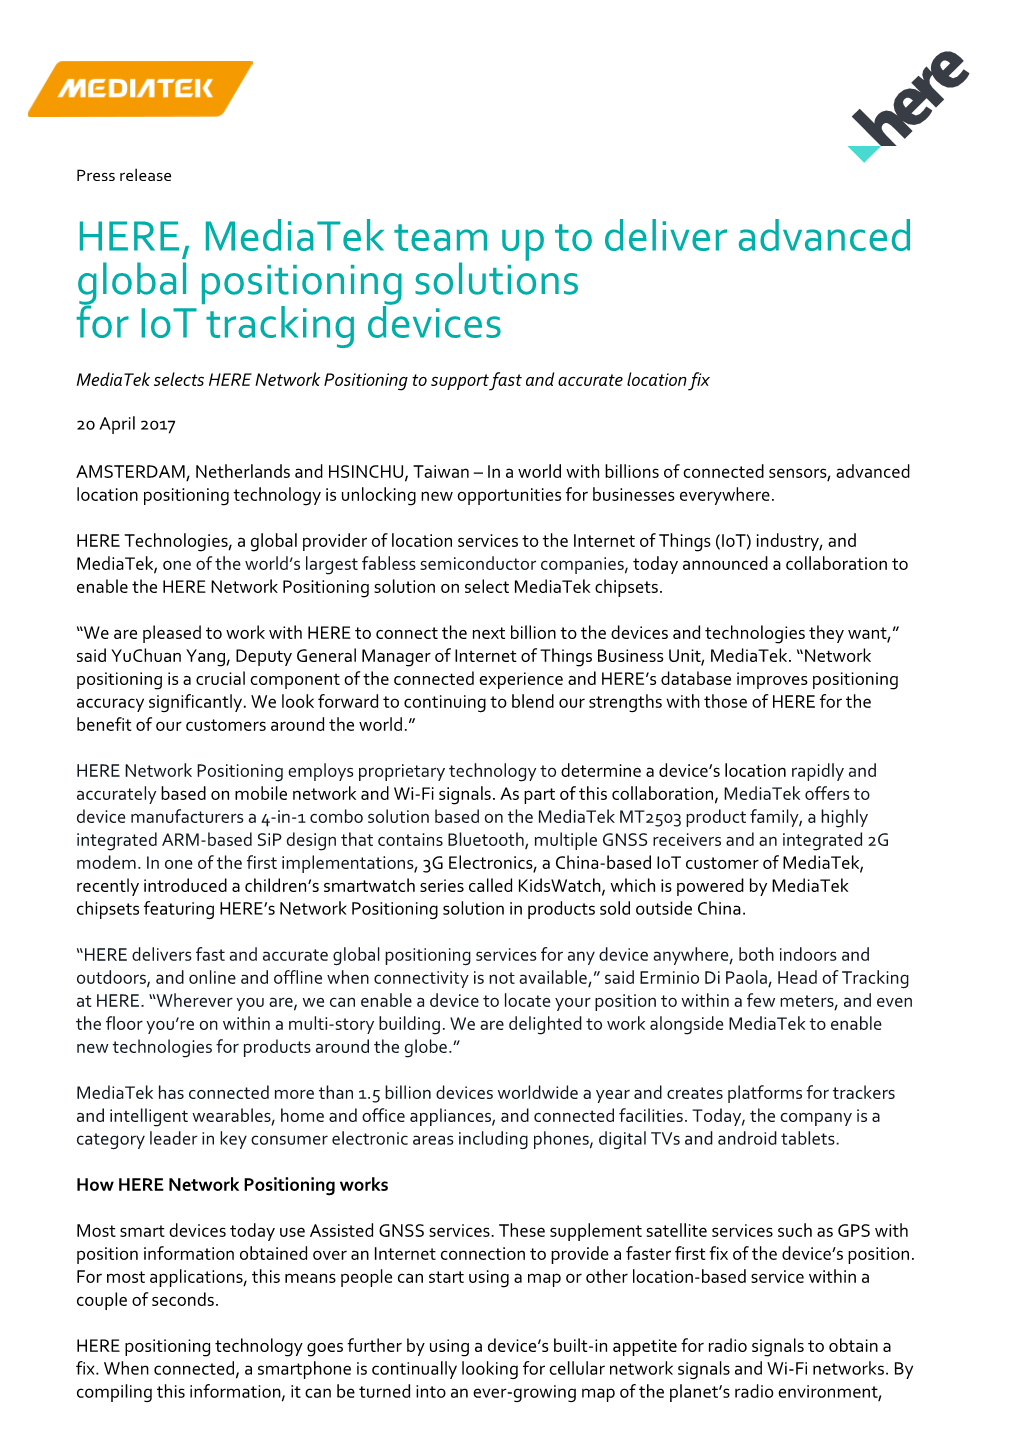 HERE, Mediatek Team up to Deliver Advanced Global Positioning